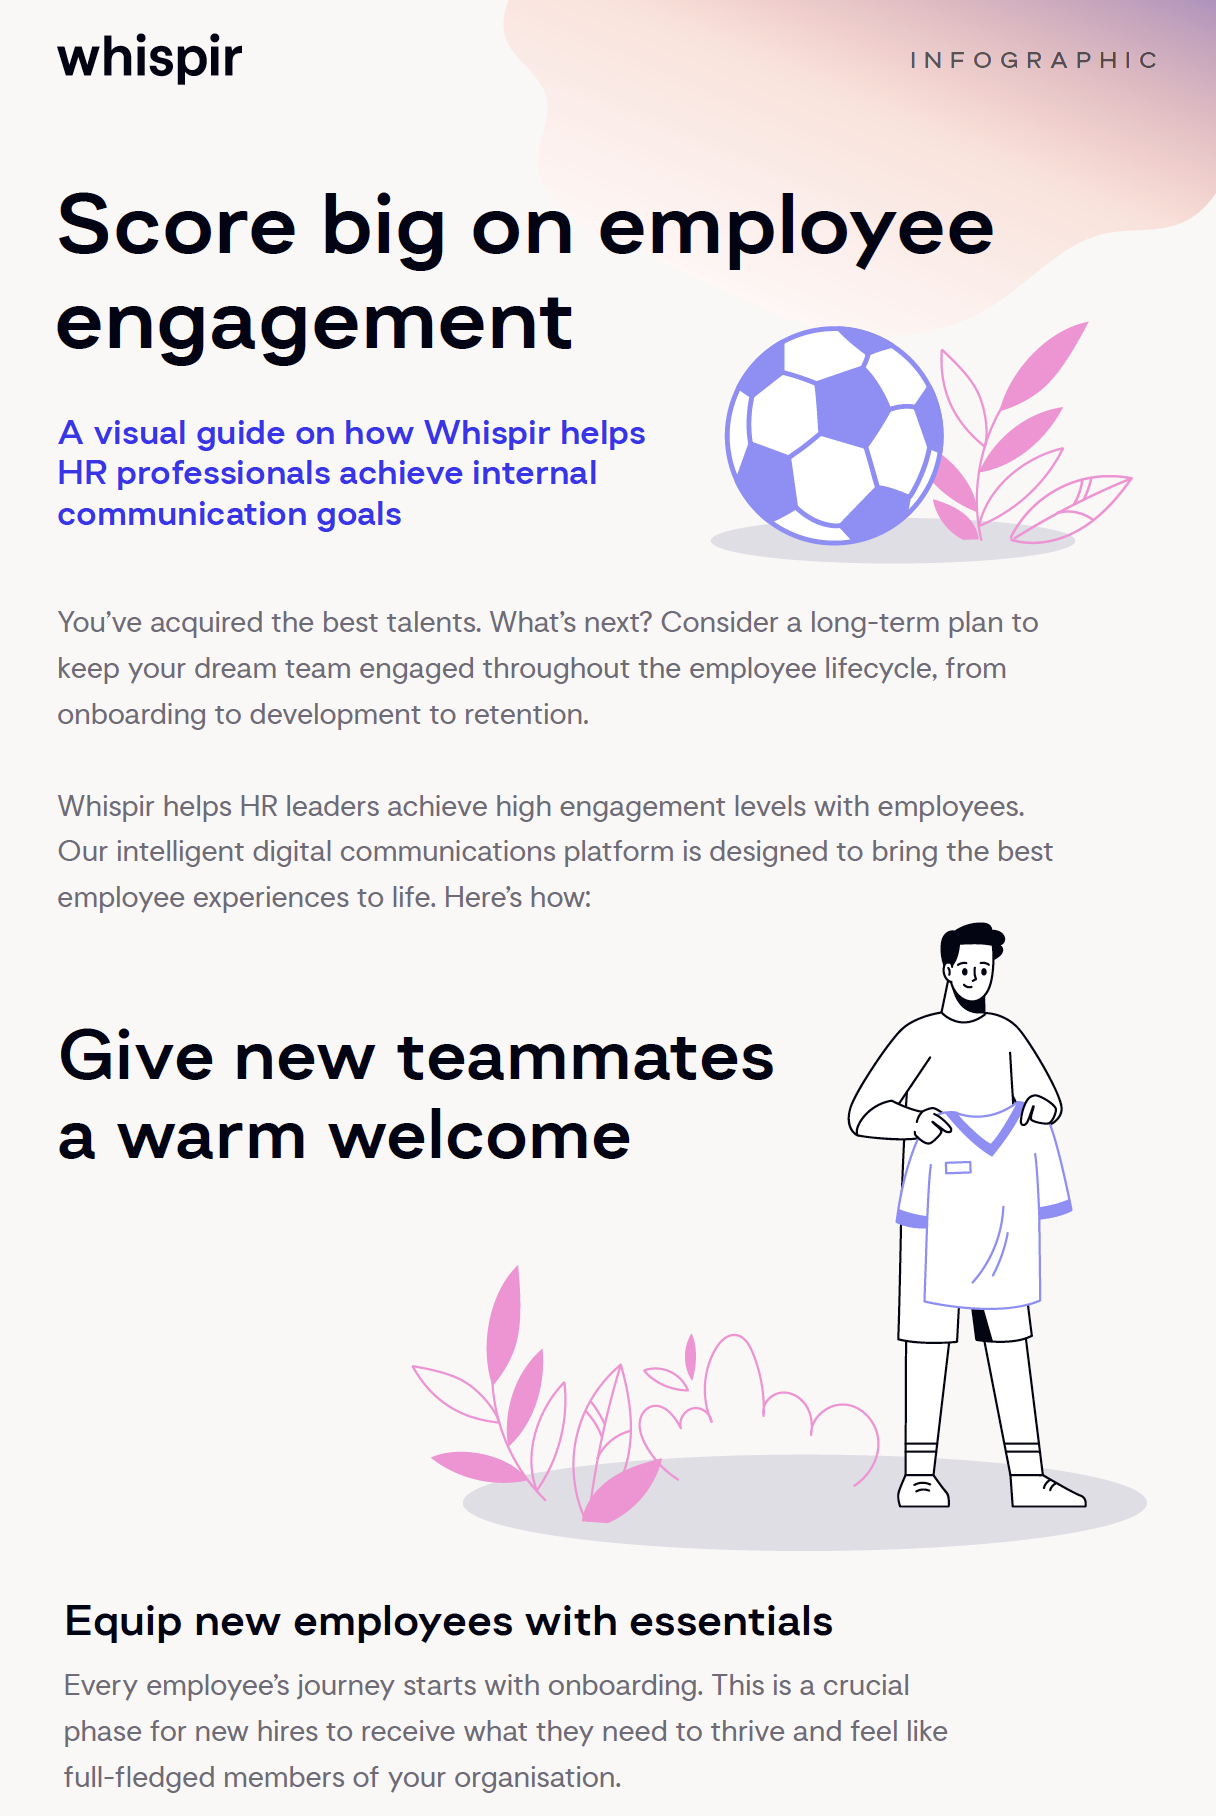 Image of Score big on employee engagement